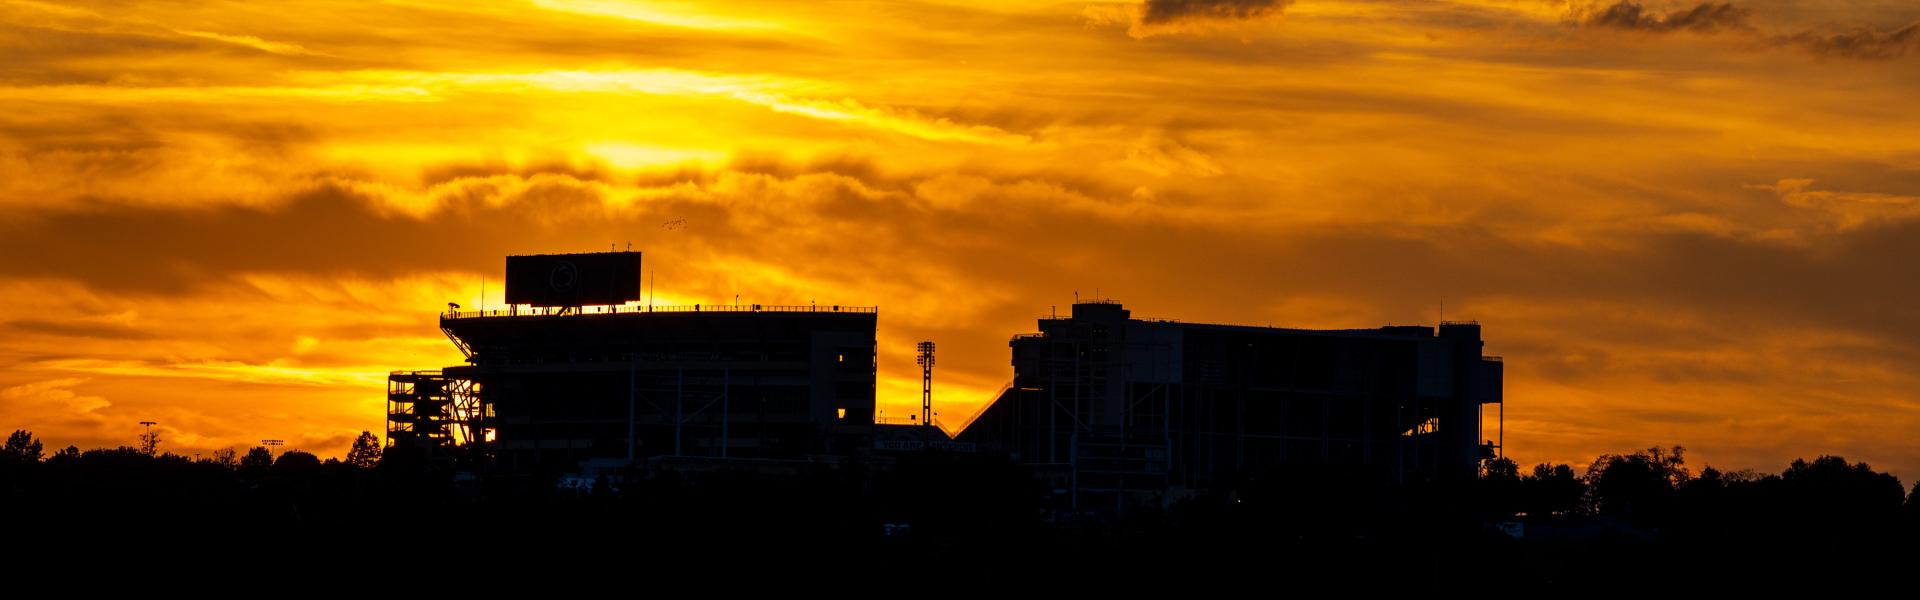 Beaver Stadium at sunset